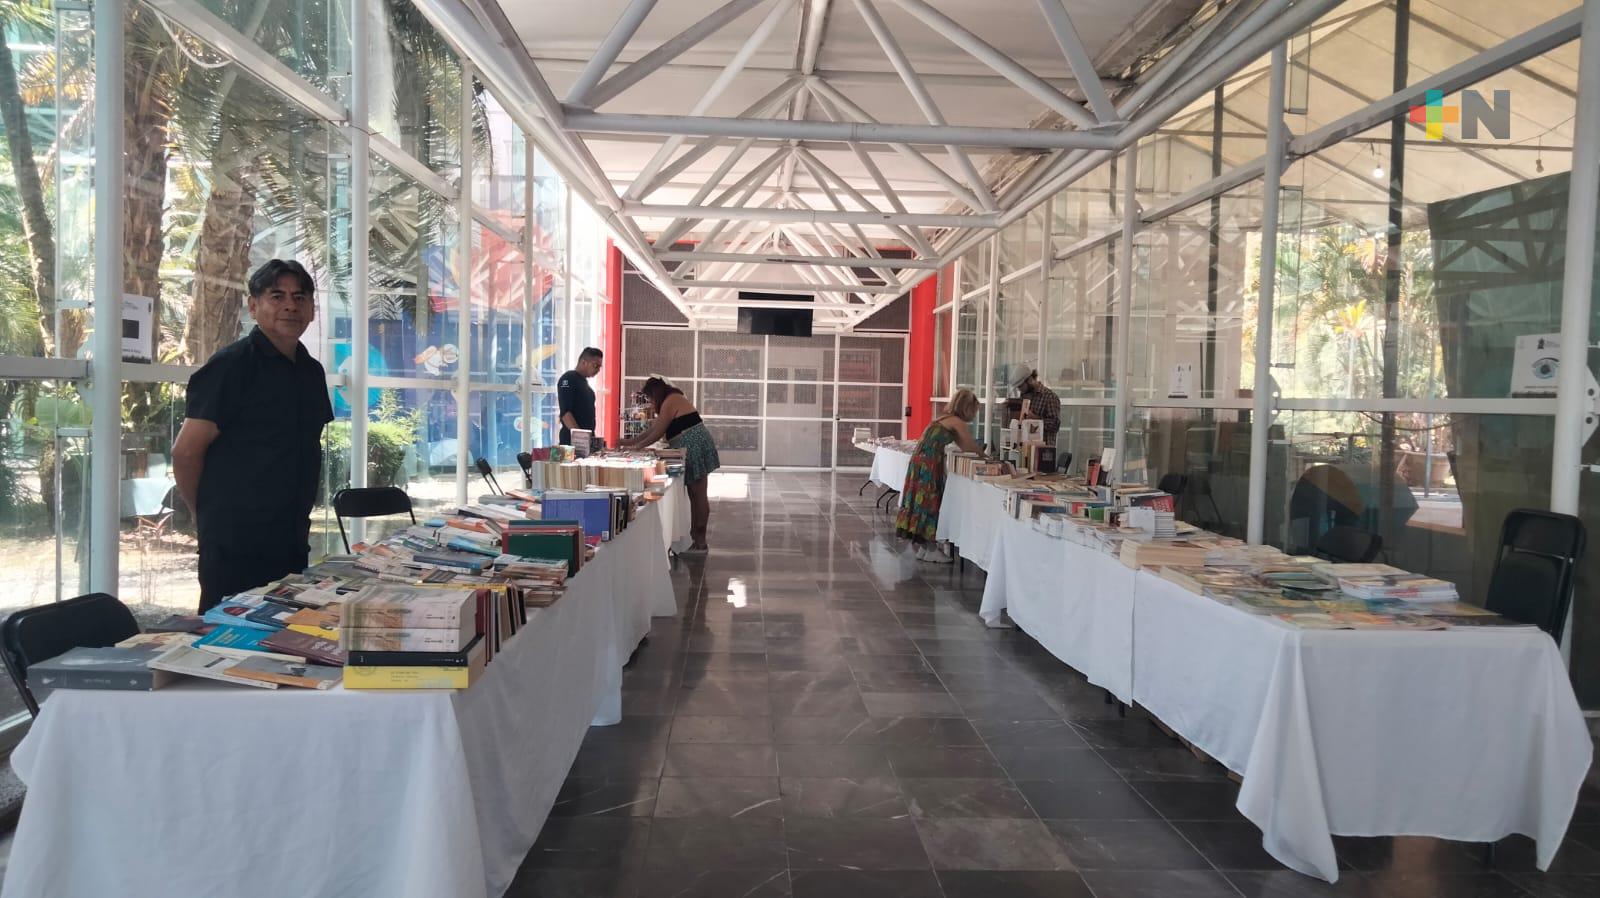 Libros a bajo costo en el Museo de la Lectura en el Kaná, organizado por Colver